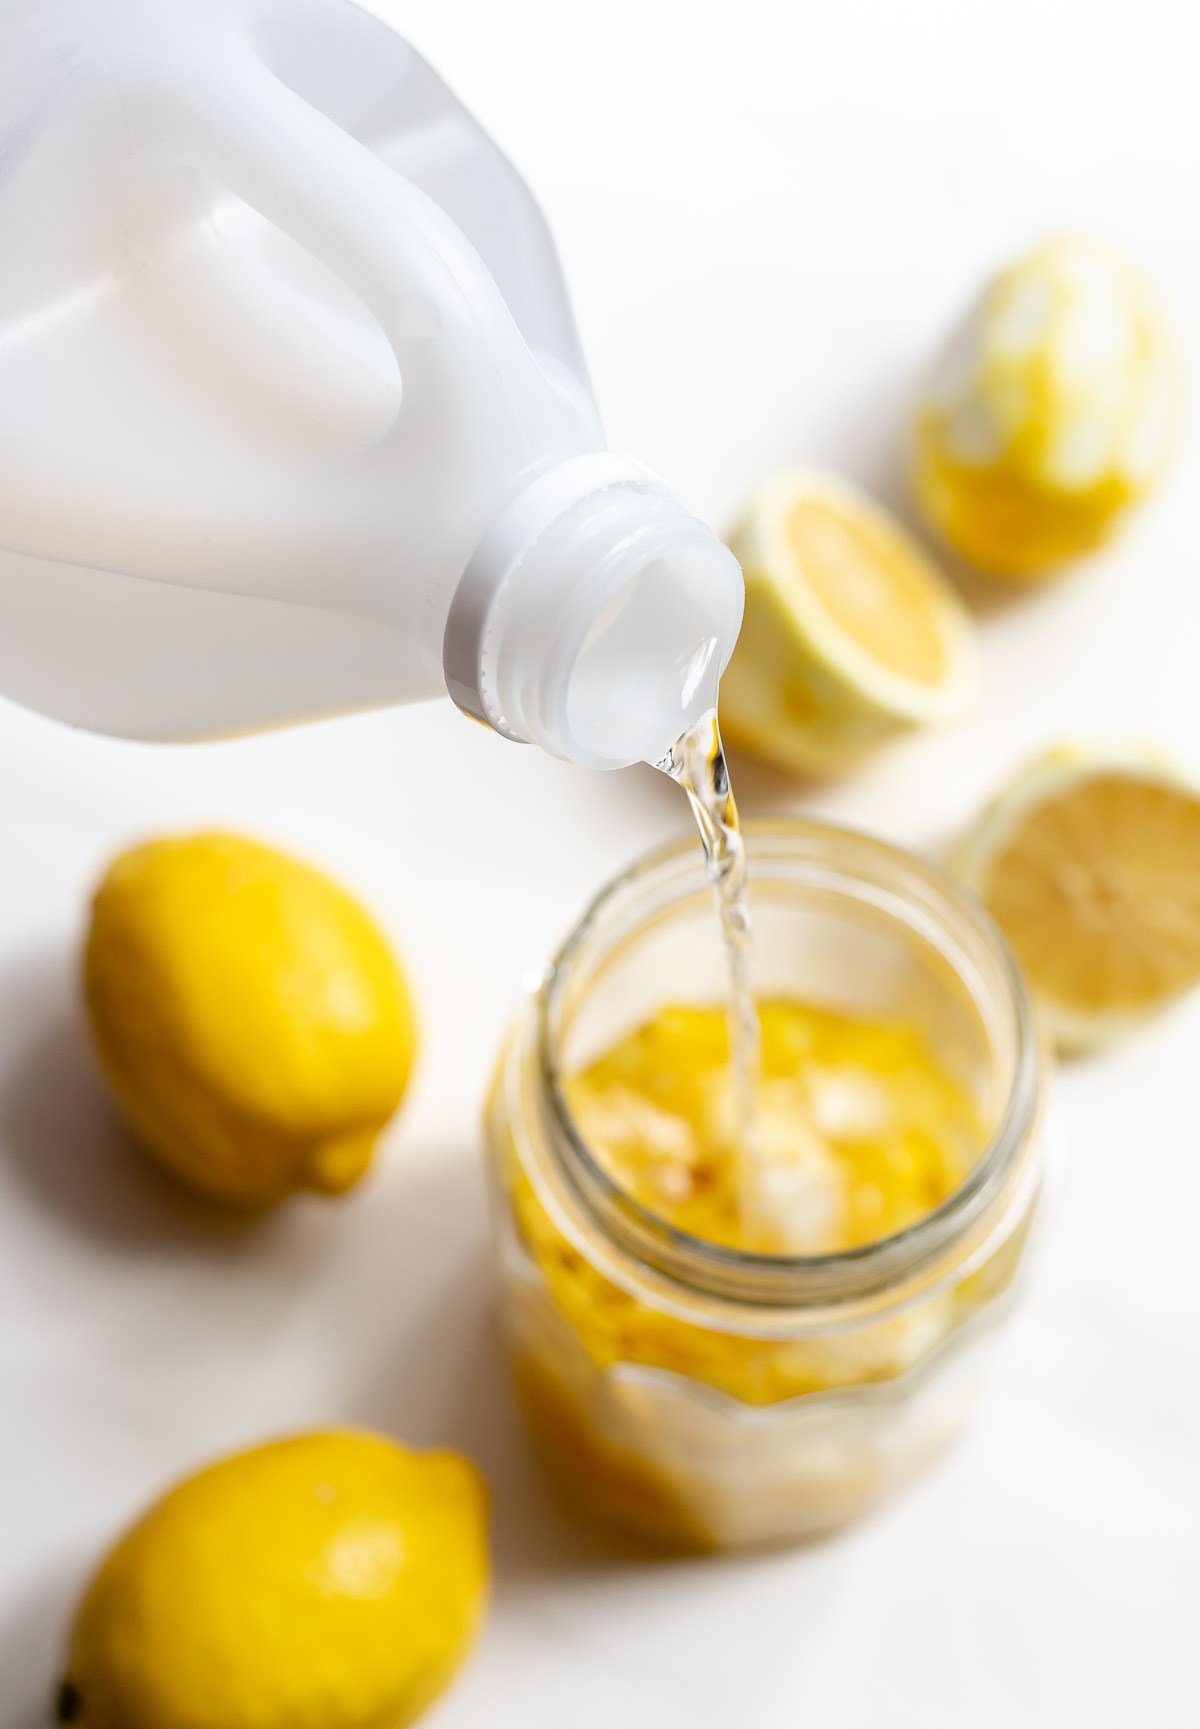 homemade lemon vinegar cleaner 3